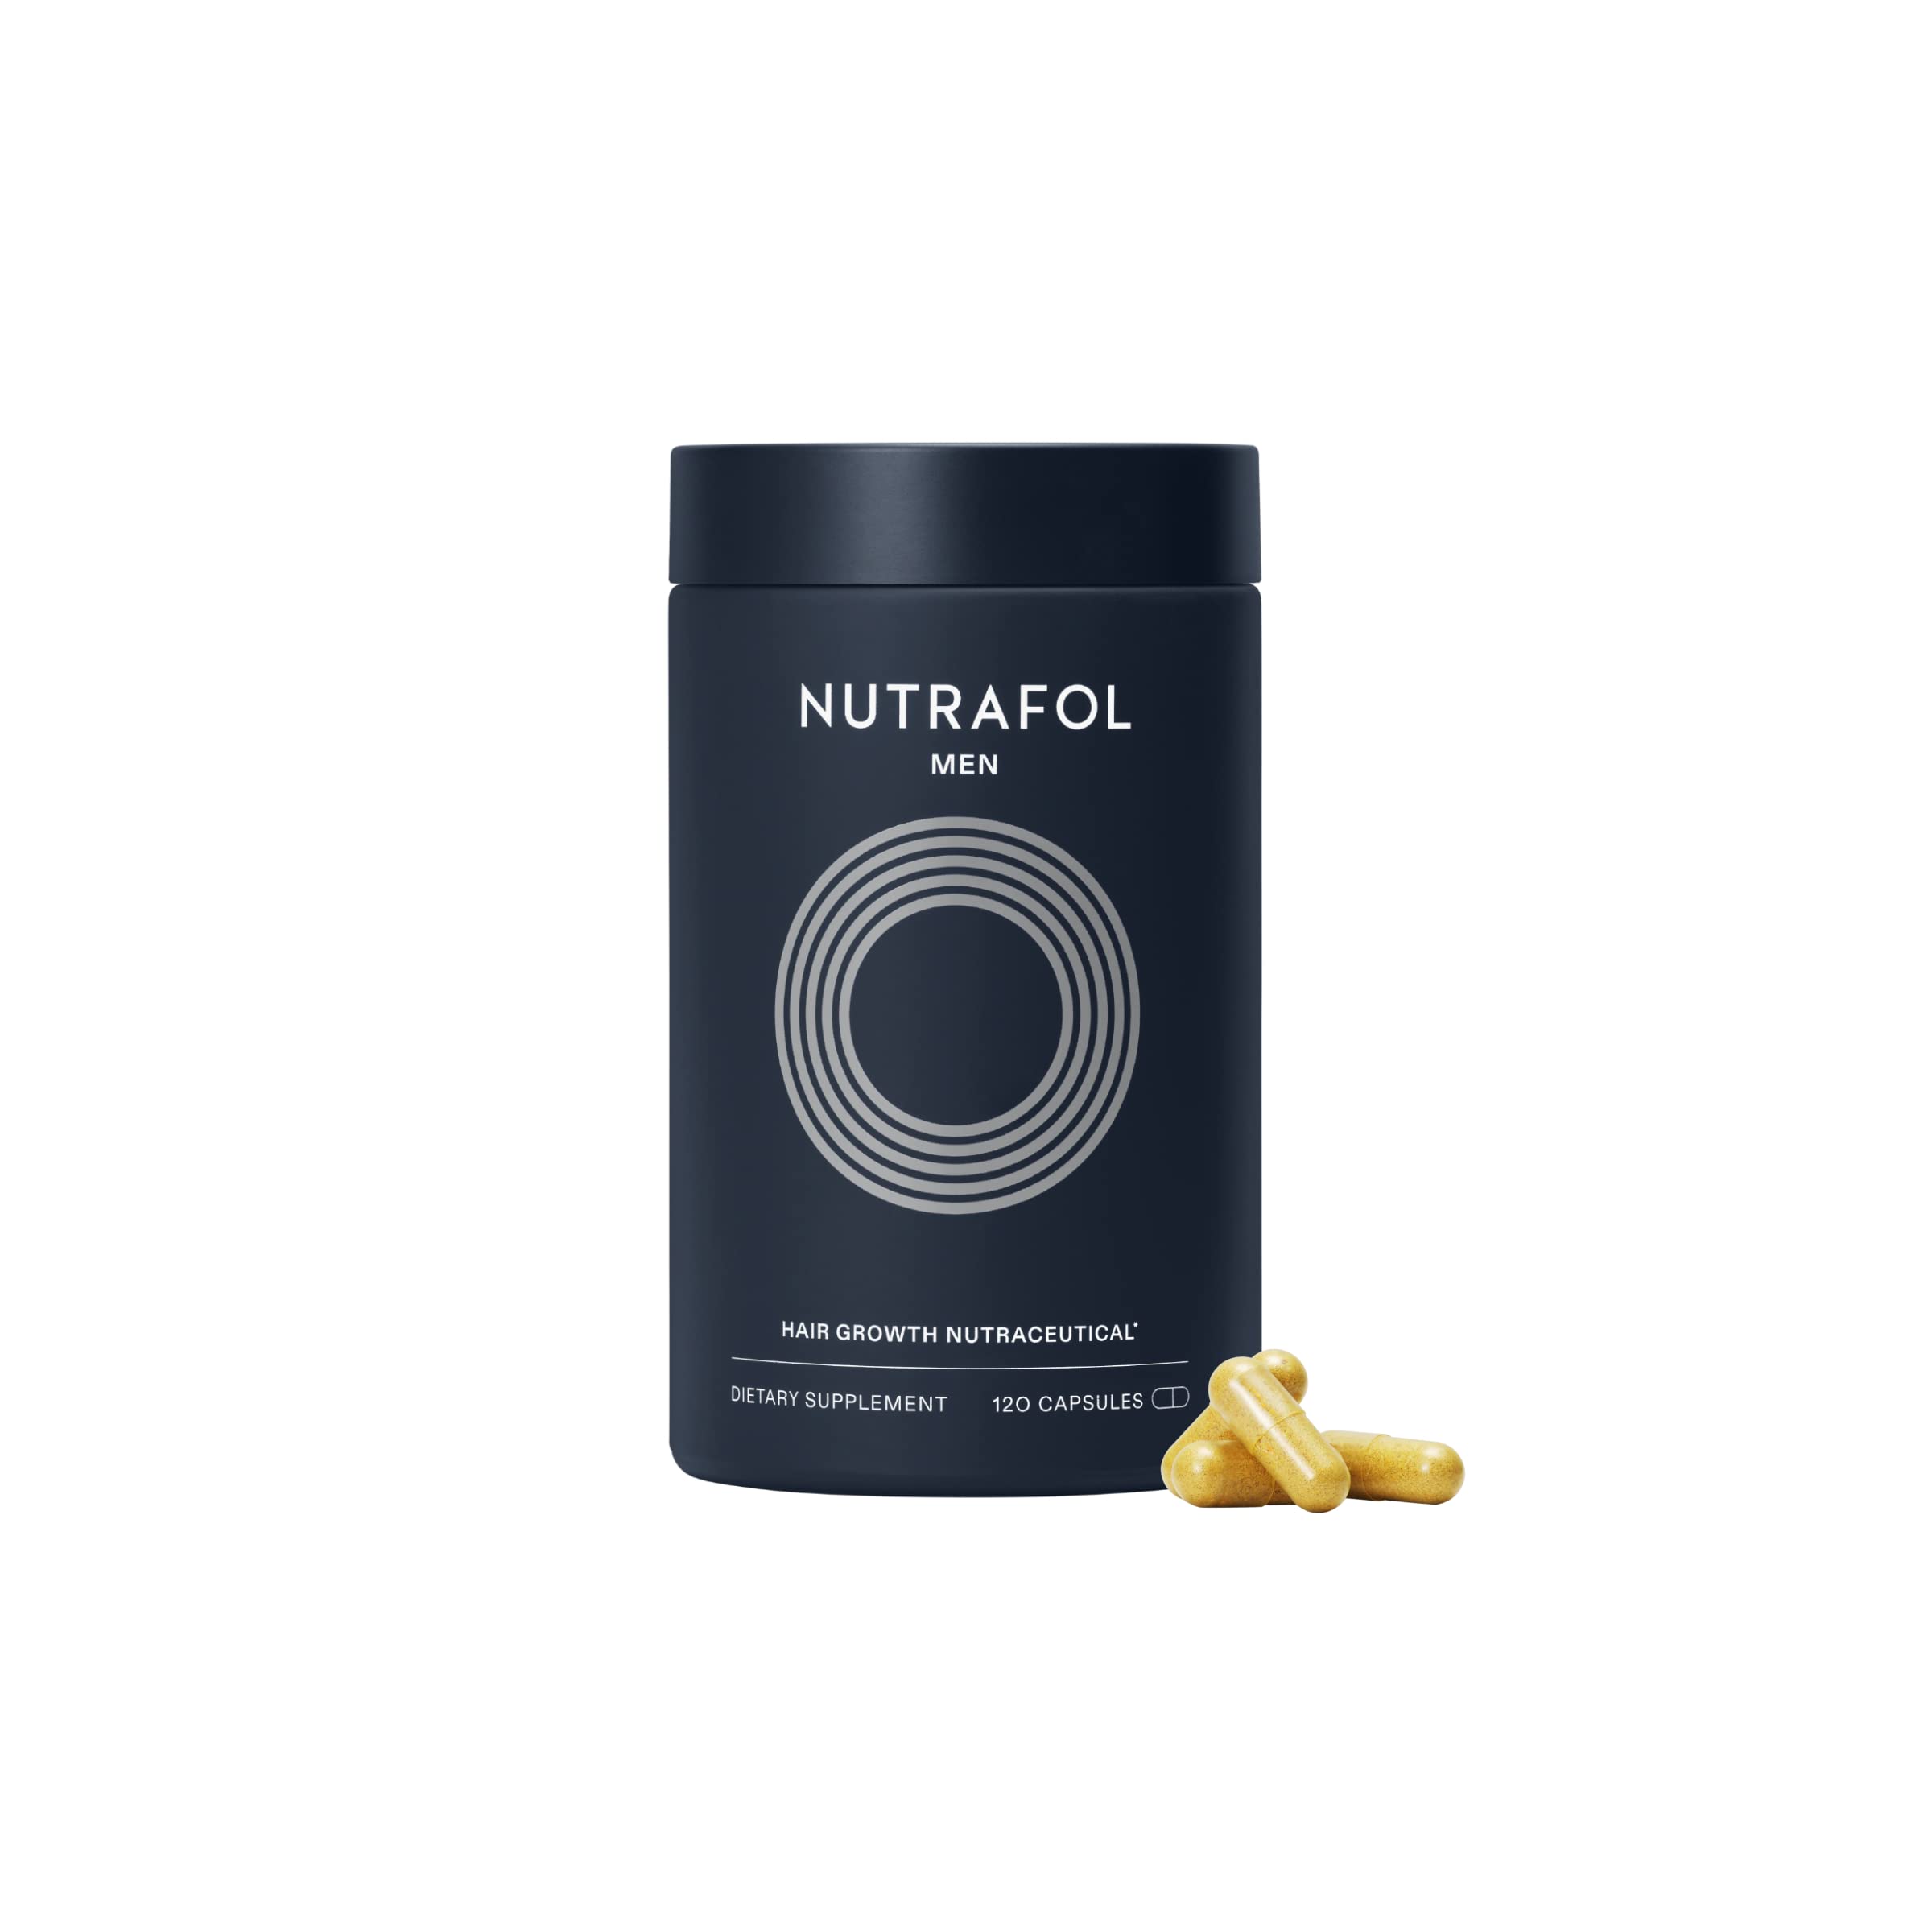  Nutrafol Supplément de croissance des cheveux pour hommes | Cliniquement efficace pour des cheveux visiblement plus épais et plus forts avec une plus grande couverture du cuir chevelu | Recommandé...